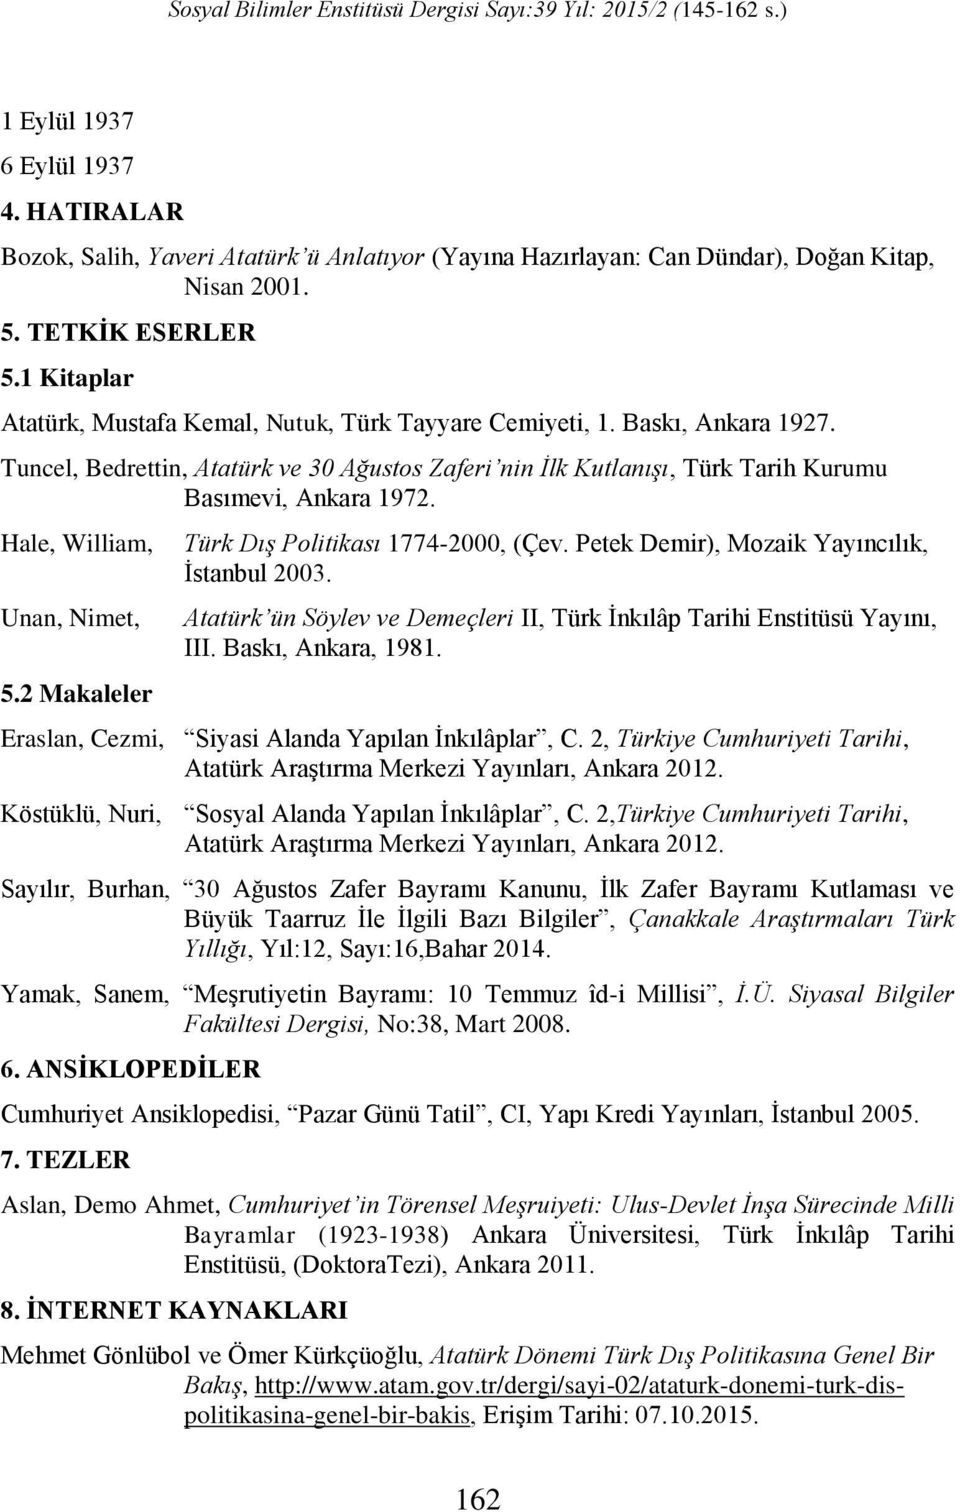 Hale, William, Unan, Nimet, 5.2 Makaleler Türk Dış Politikası 1774-2000, (Çev. Petek Demir), Mozaik Yayıncılık, İstanbul 2003.